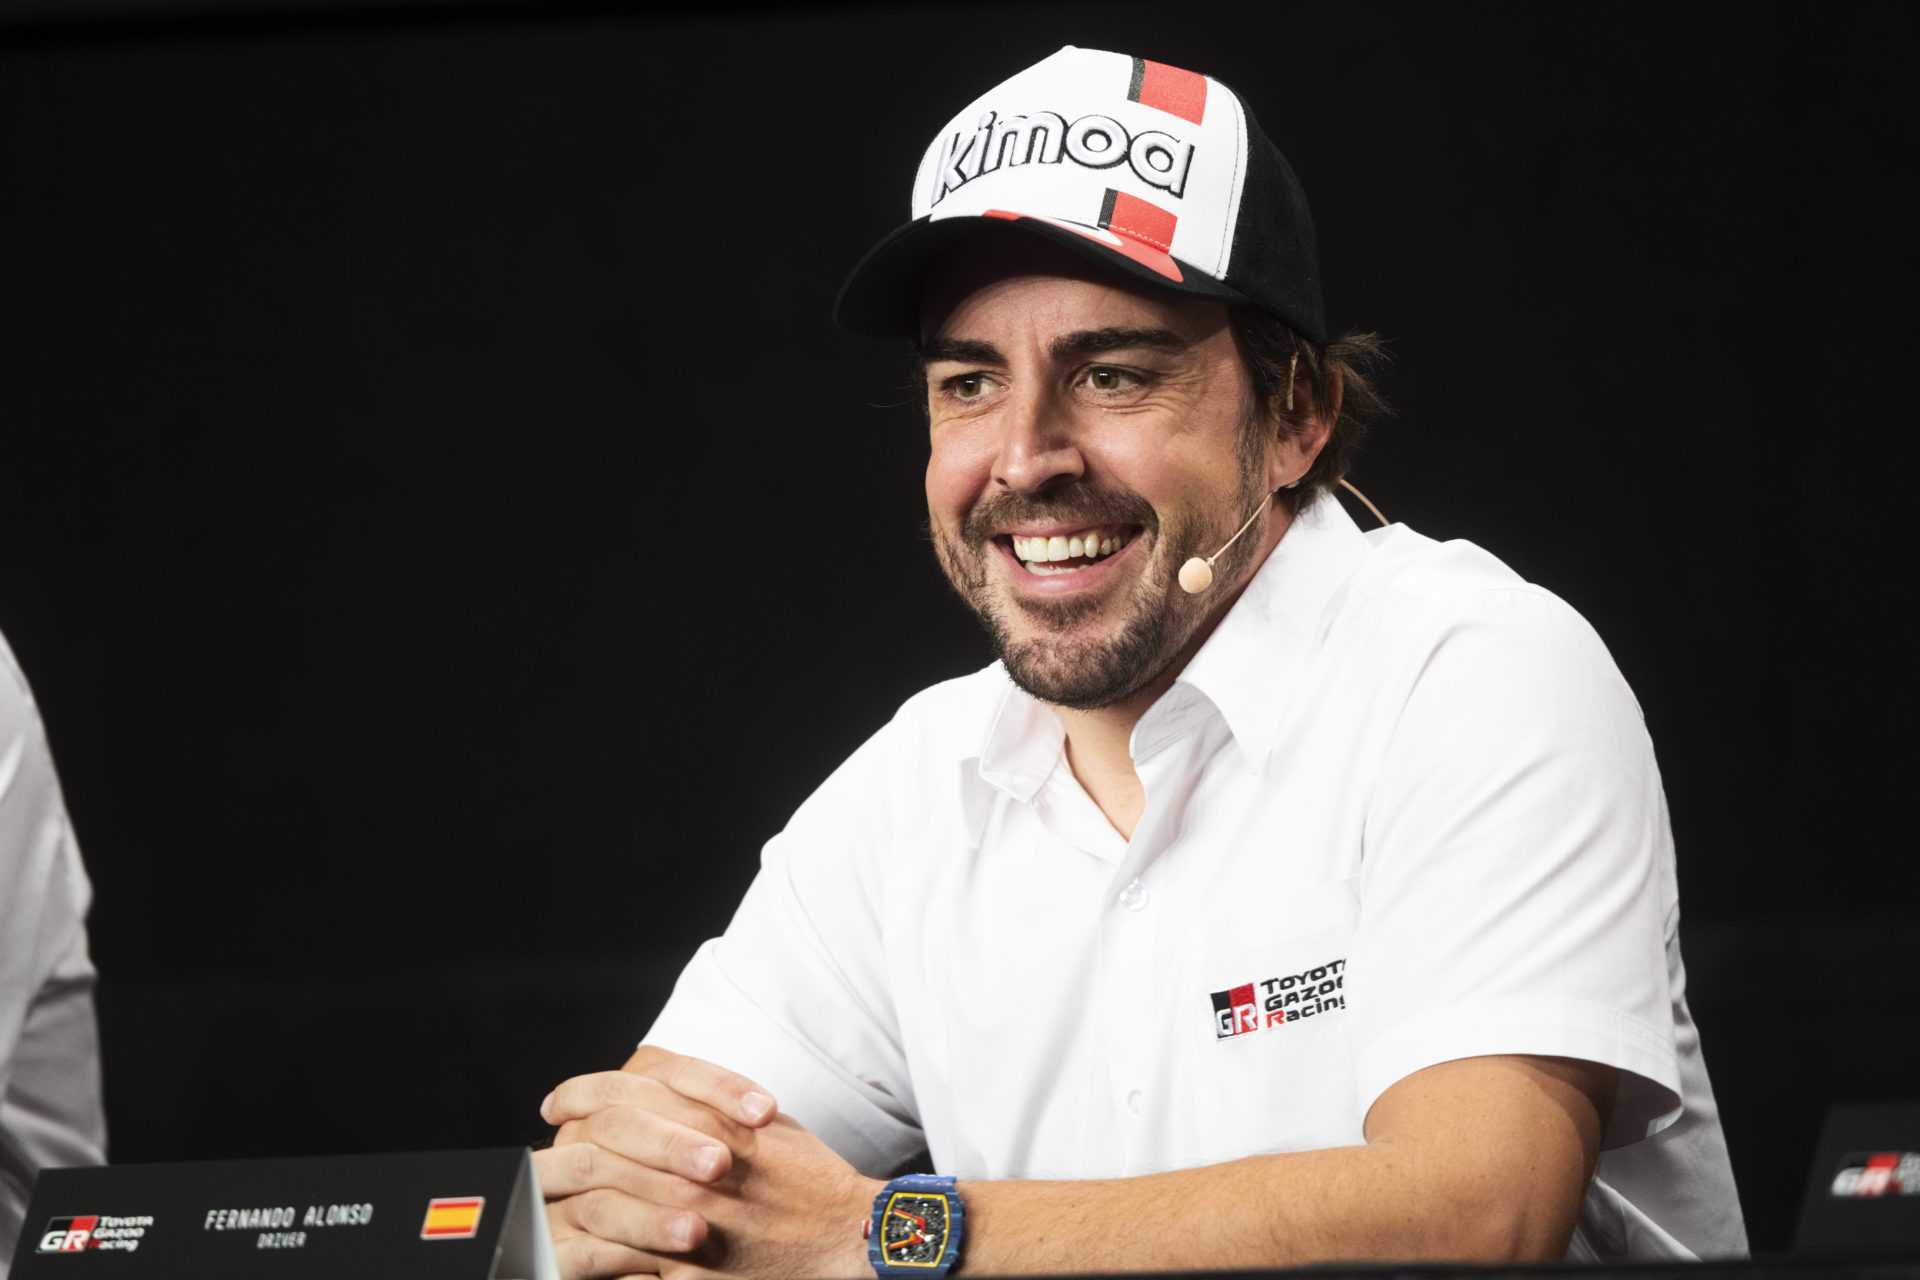 Travailler avec Fernando Alonso complètement différent de l'opinion populaire: McLaren Boss